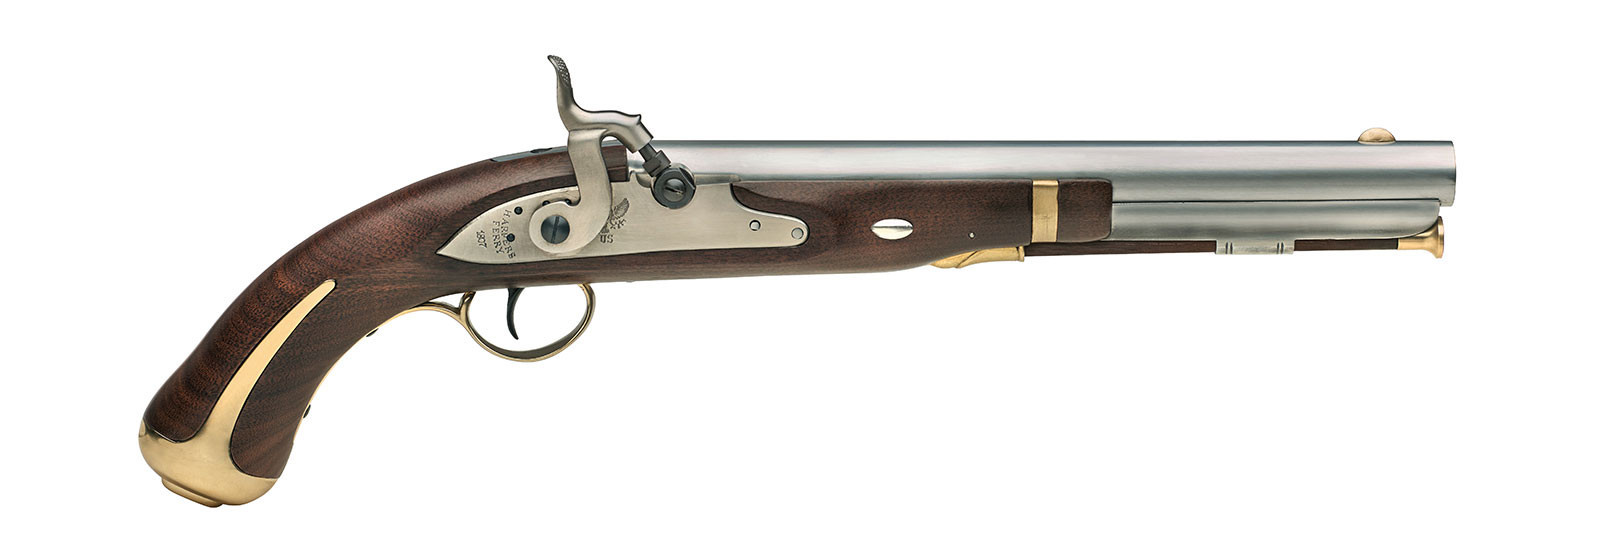 Pistola Harper's Ferry Conversion